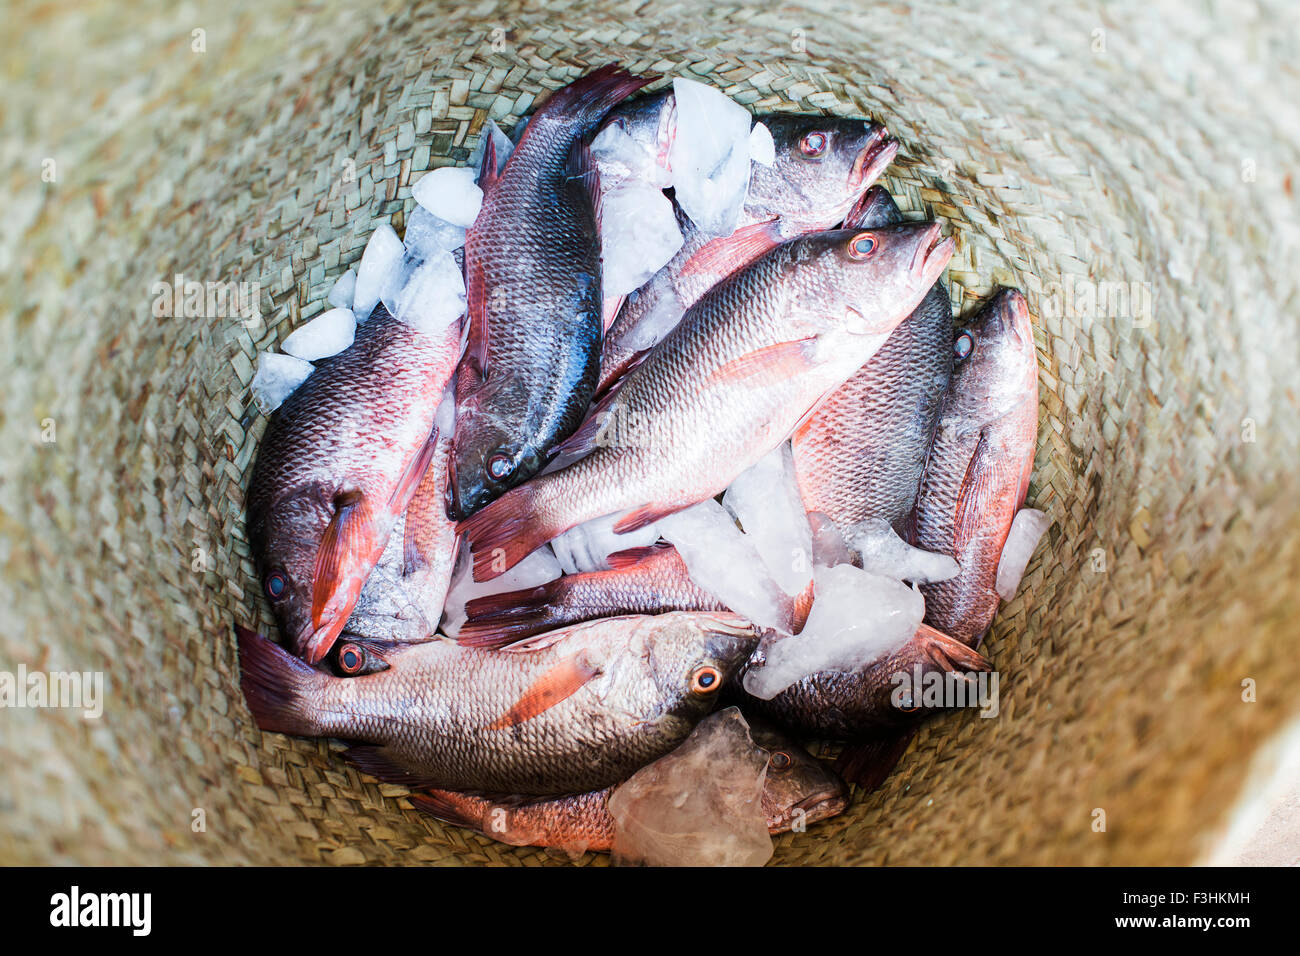 LAMU, INDISCHER OZEAN, KENIA, AFRIKA. Einen geflochtenen Korb voller kleiner roter Fisch auf Eis. Stockfoto